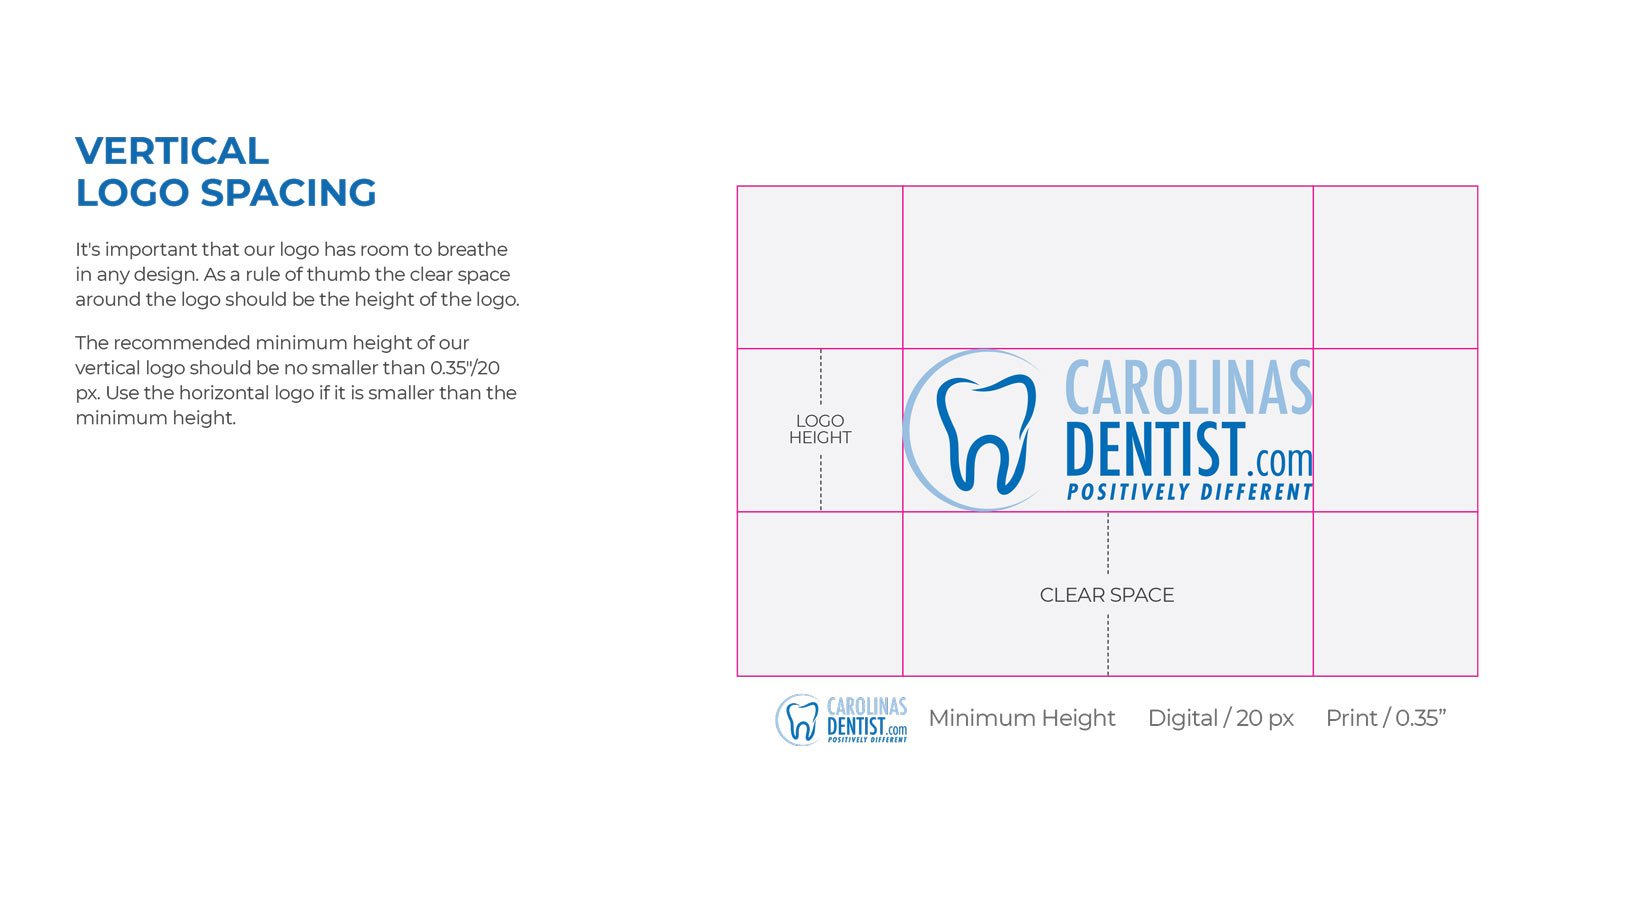 Carolinas Dentist Logo Spacing Guide